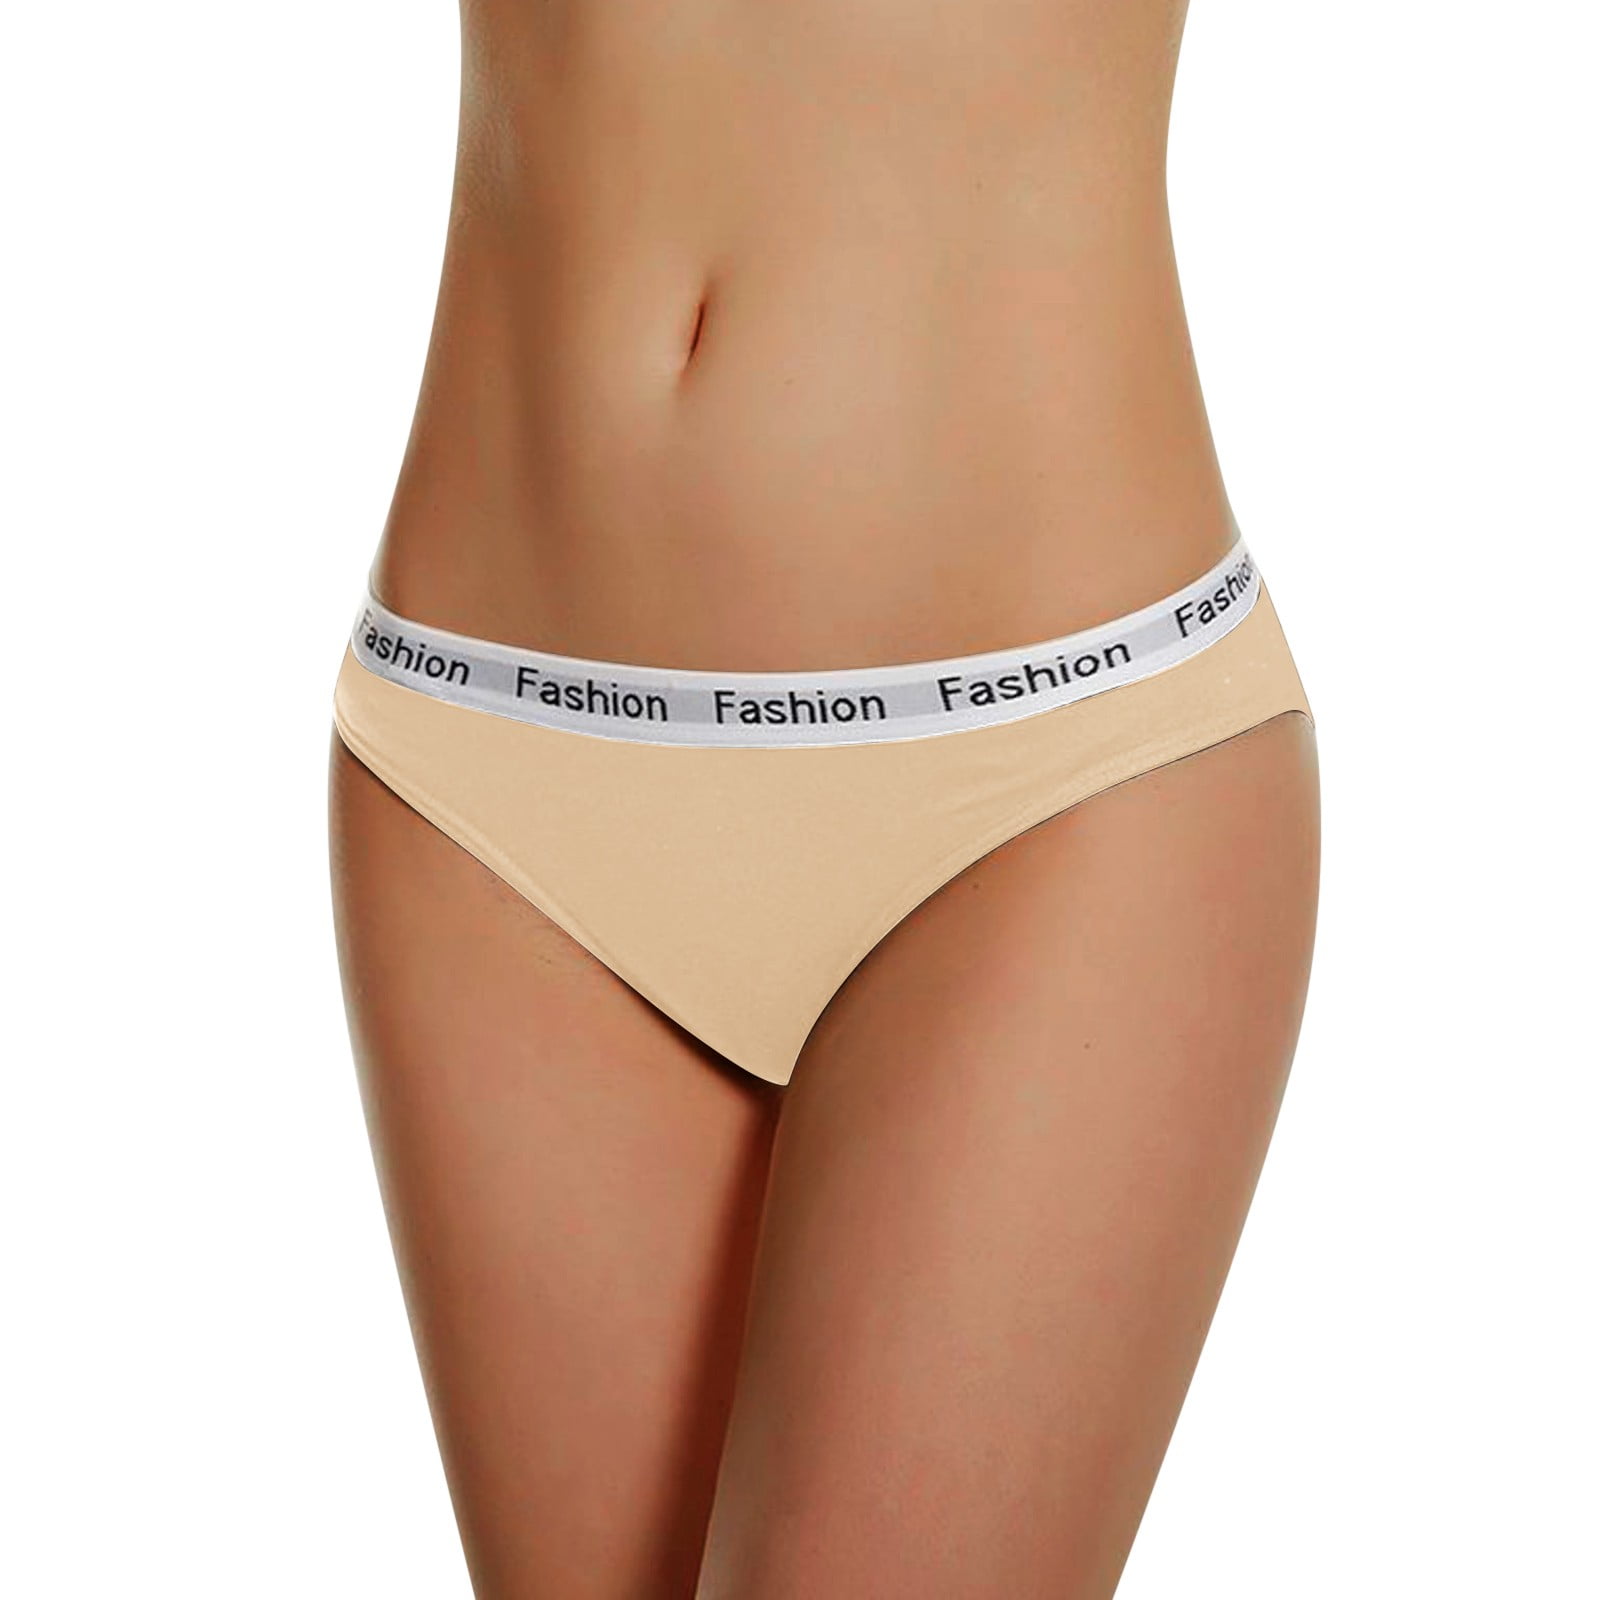 Teen Underwear Women's Panty Cotton Panties Girls Sports Lingerie Briefs  Female Women's Underwear under Clothes Waist Trainer 